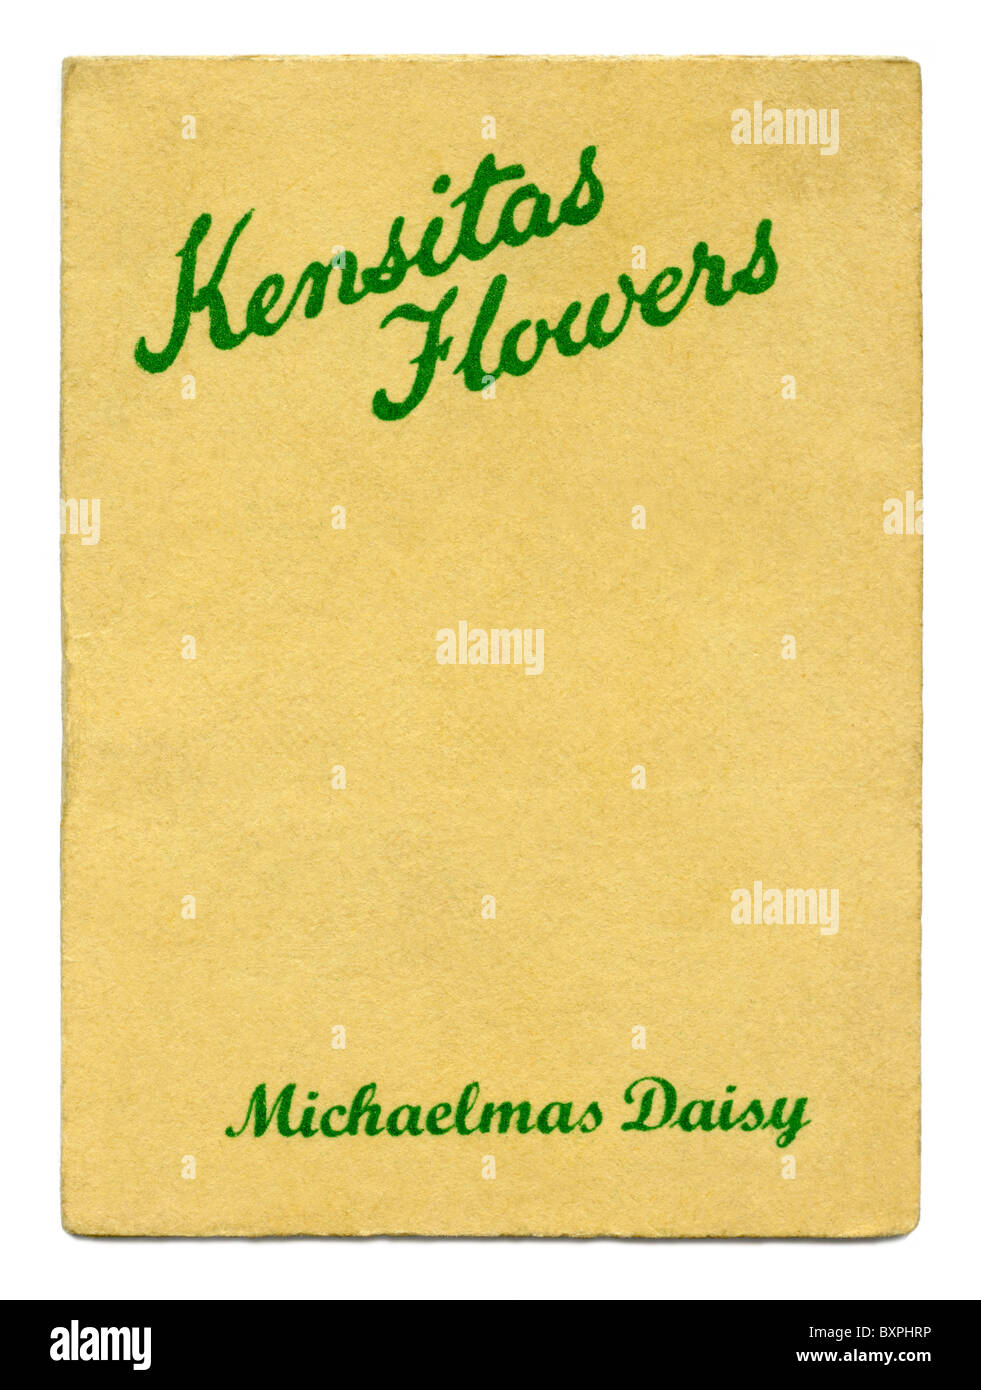 Fleurs Kensitas carte cigarette contenant un dossier à l'intérieur de fleurs en soie, donné dans les paquets de cigarettes en 1933 Banque D'Images